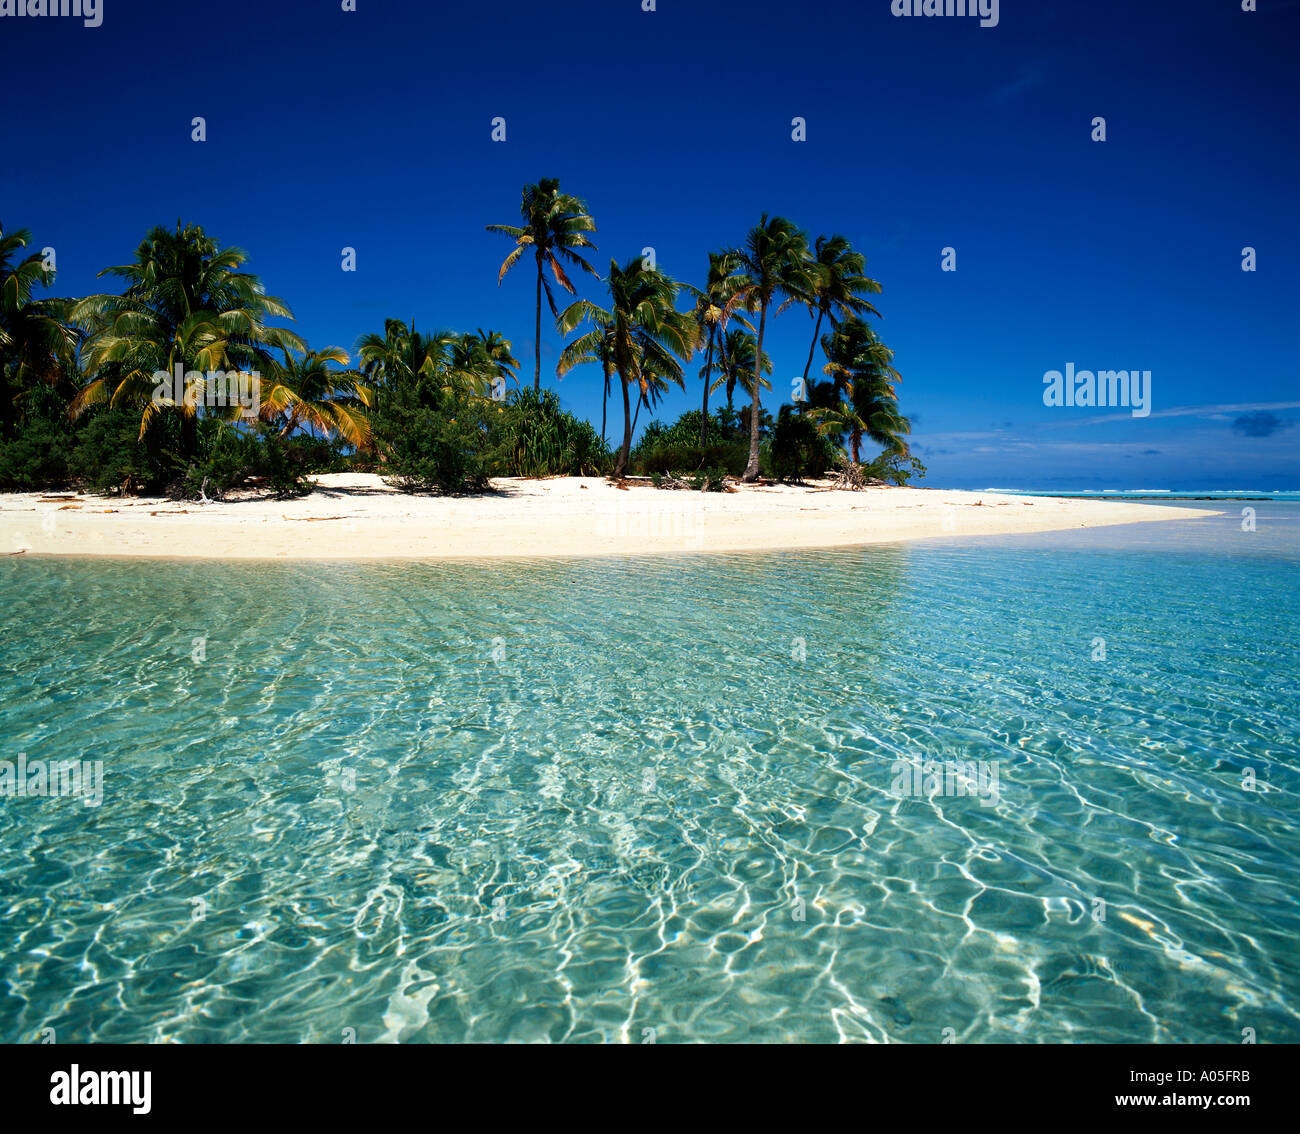 Sud Pacifico Isole Cook Aitutaki Lagoon un piede isola sogno spiaggia cristal acqua chiara Foto Stock